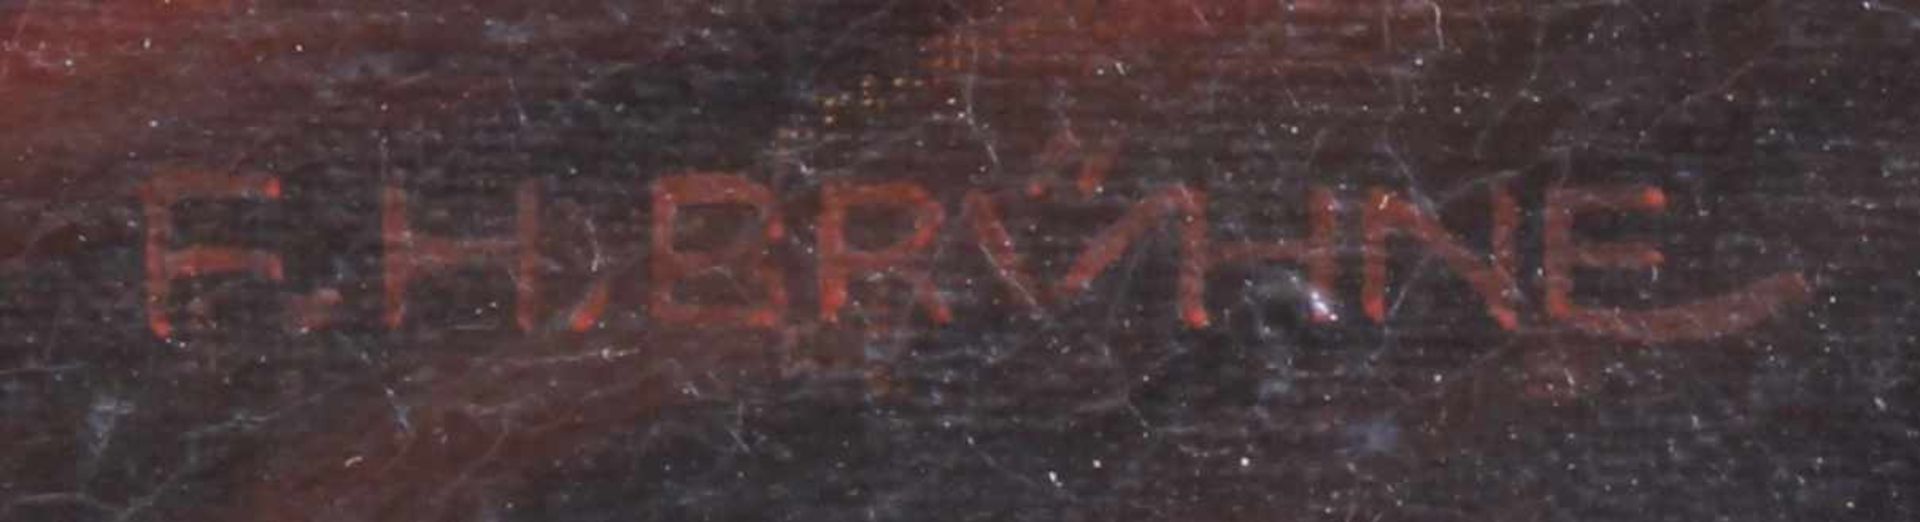 Brühne, Friedrich Heinrich (19./20.Jh.), "Abguss eines Konverters", Öl auf Leinwand, signiert - Bild 5 aus 8